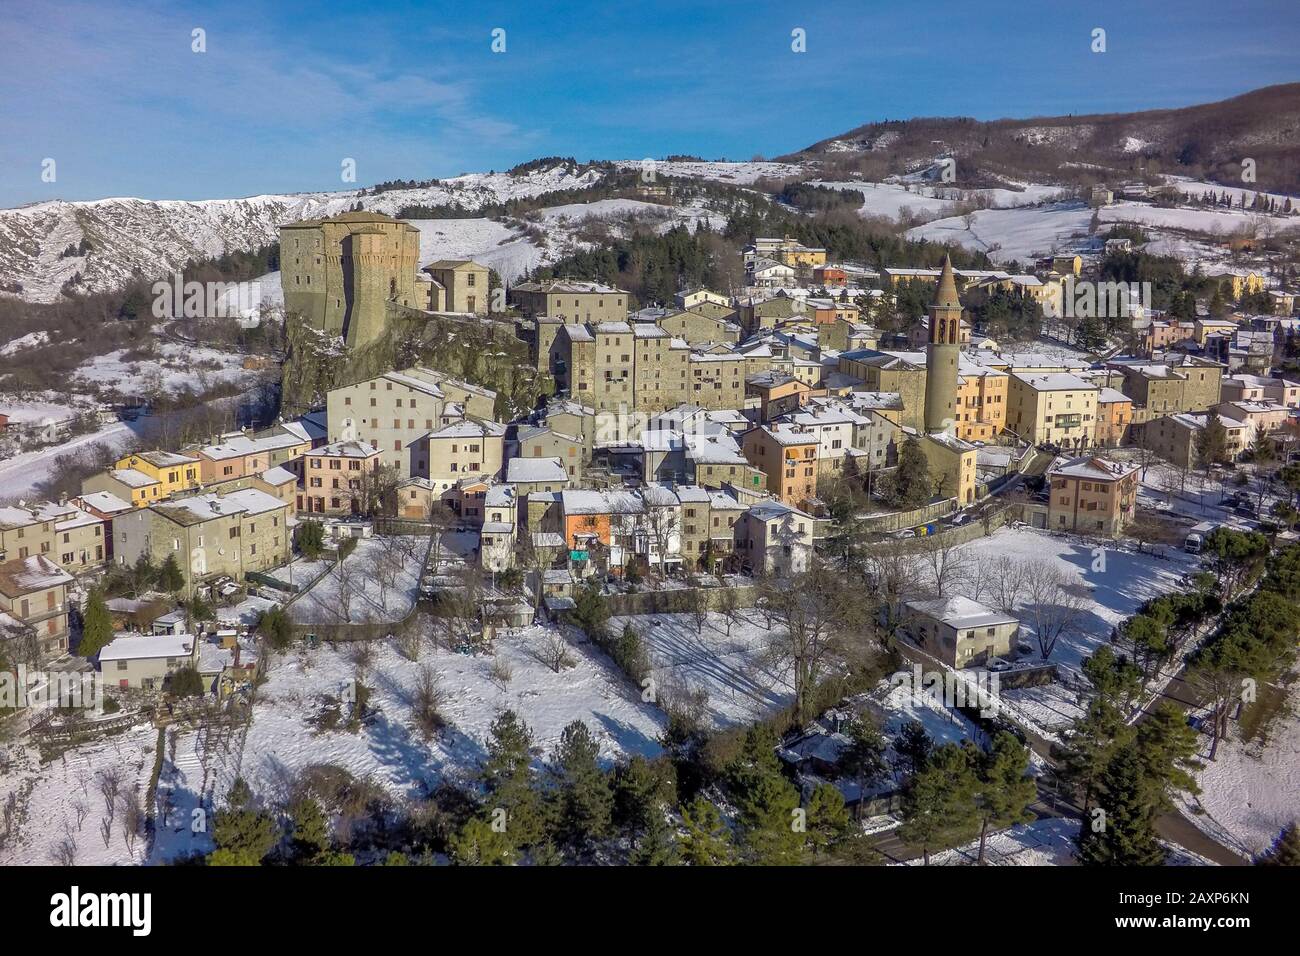 Vista panoramica del villaggio di sant'Agata Feltria in inverno Foto Stock